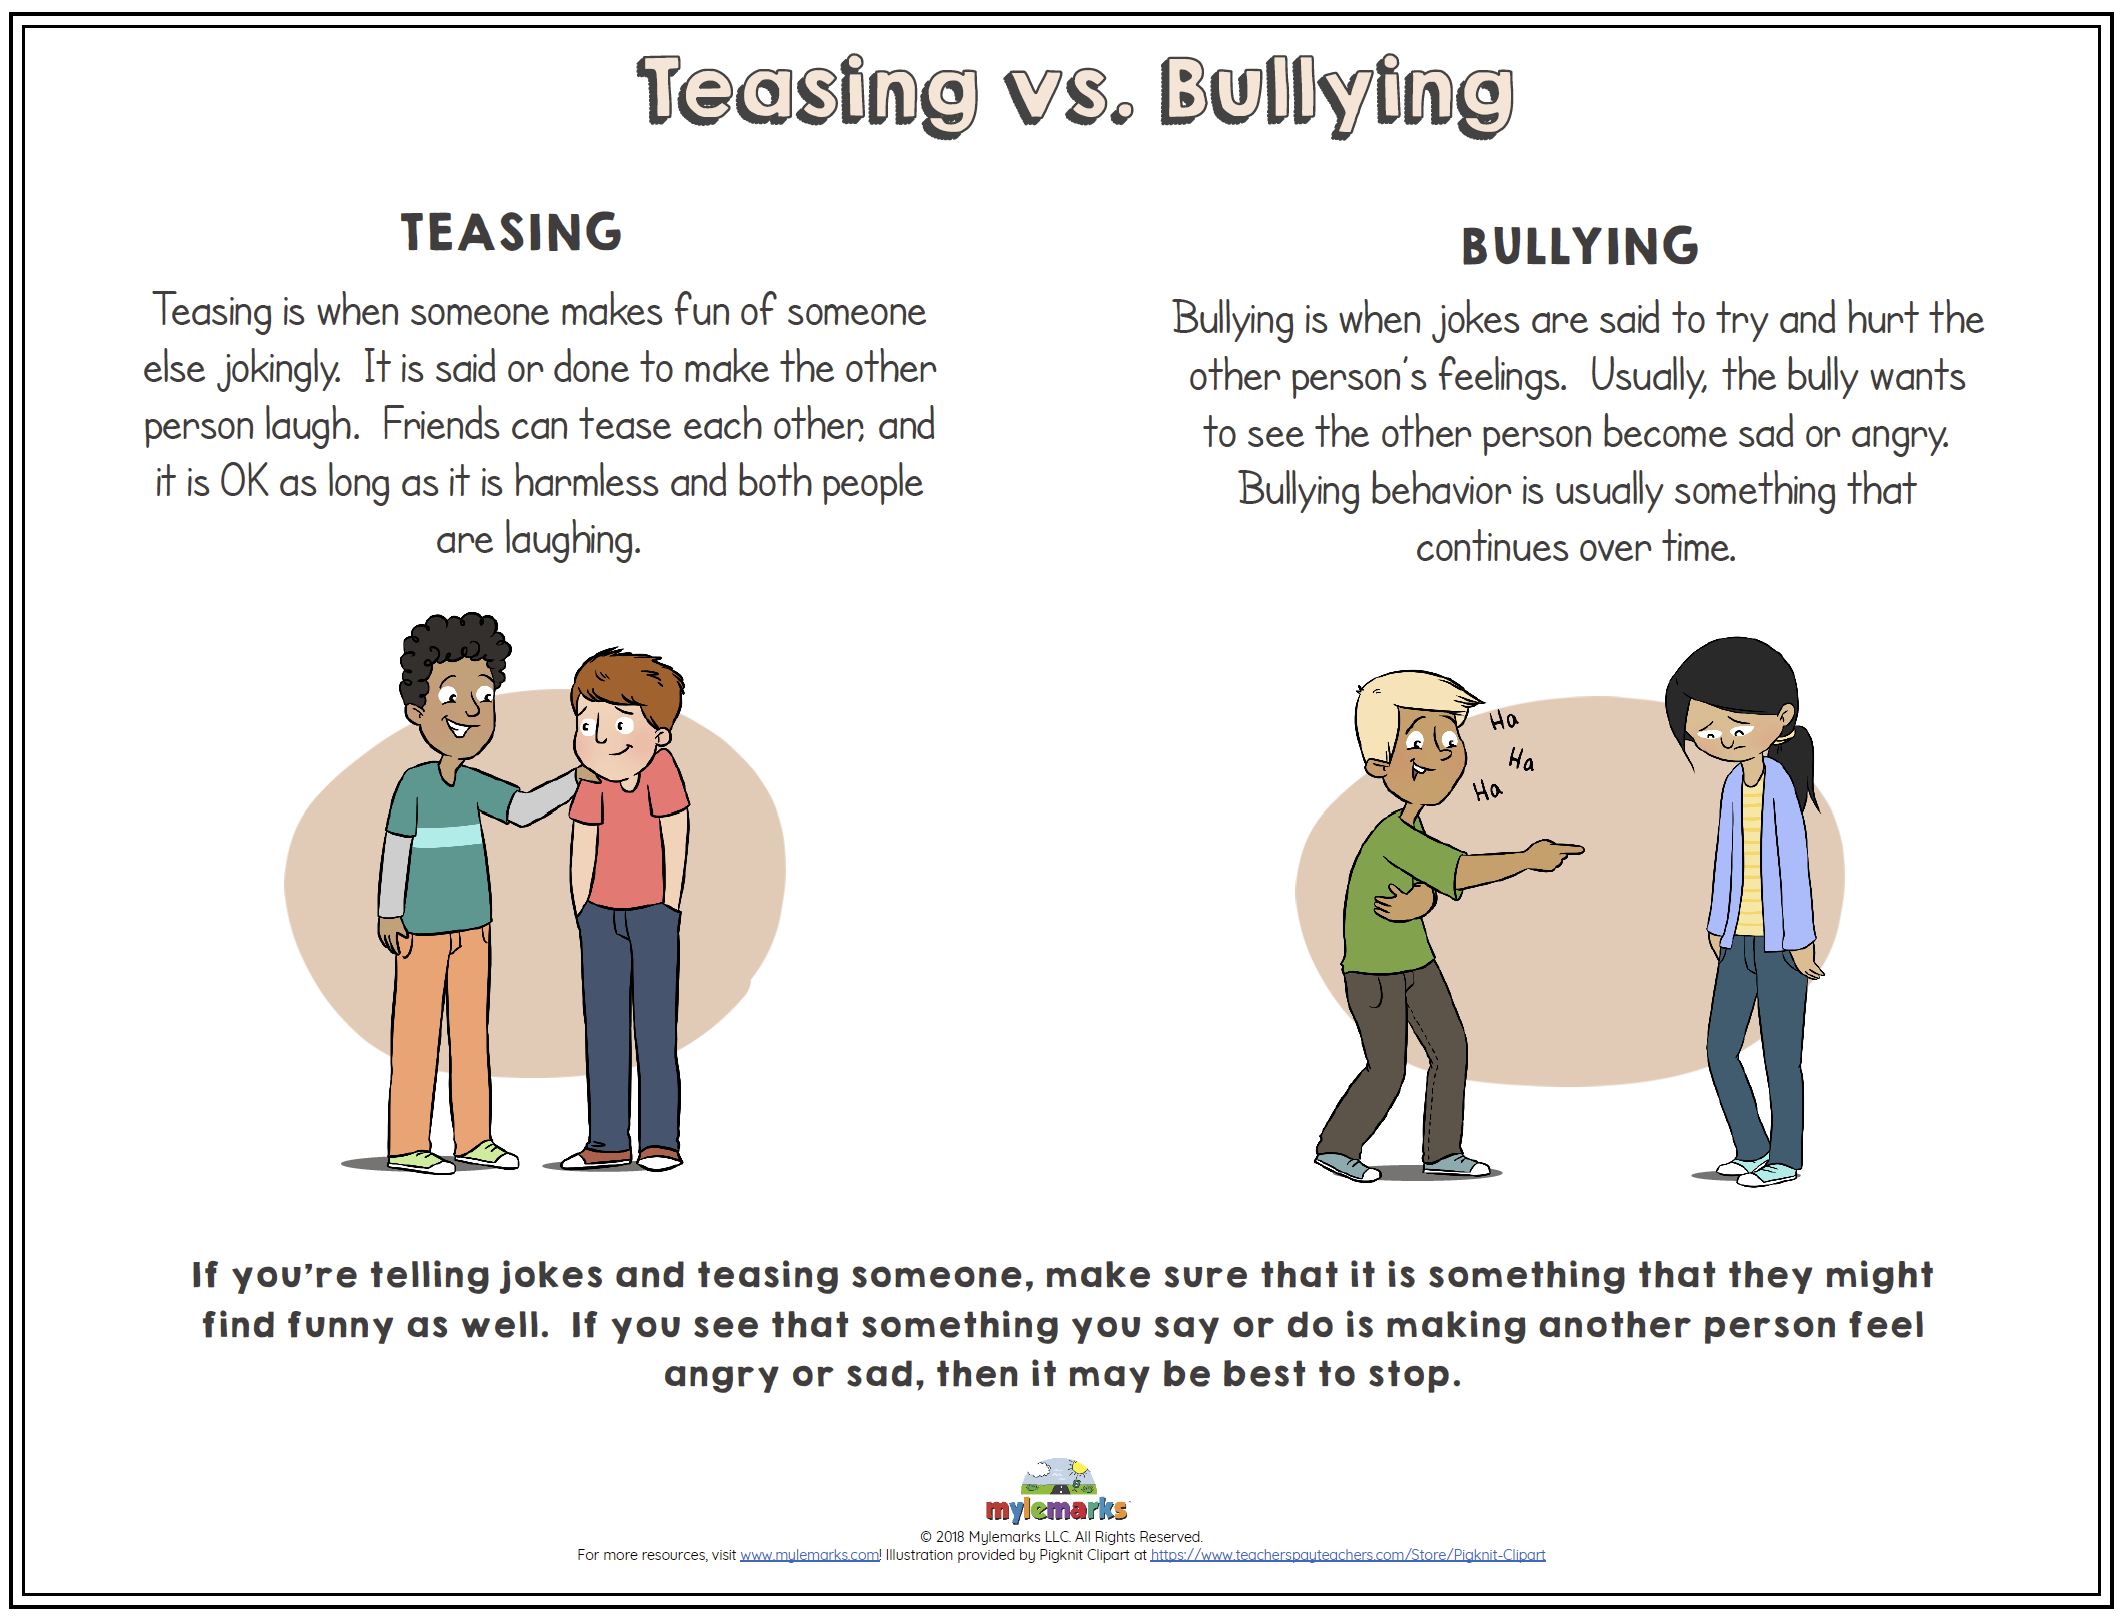 Teasing vs. Bullying